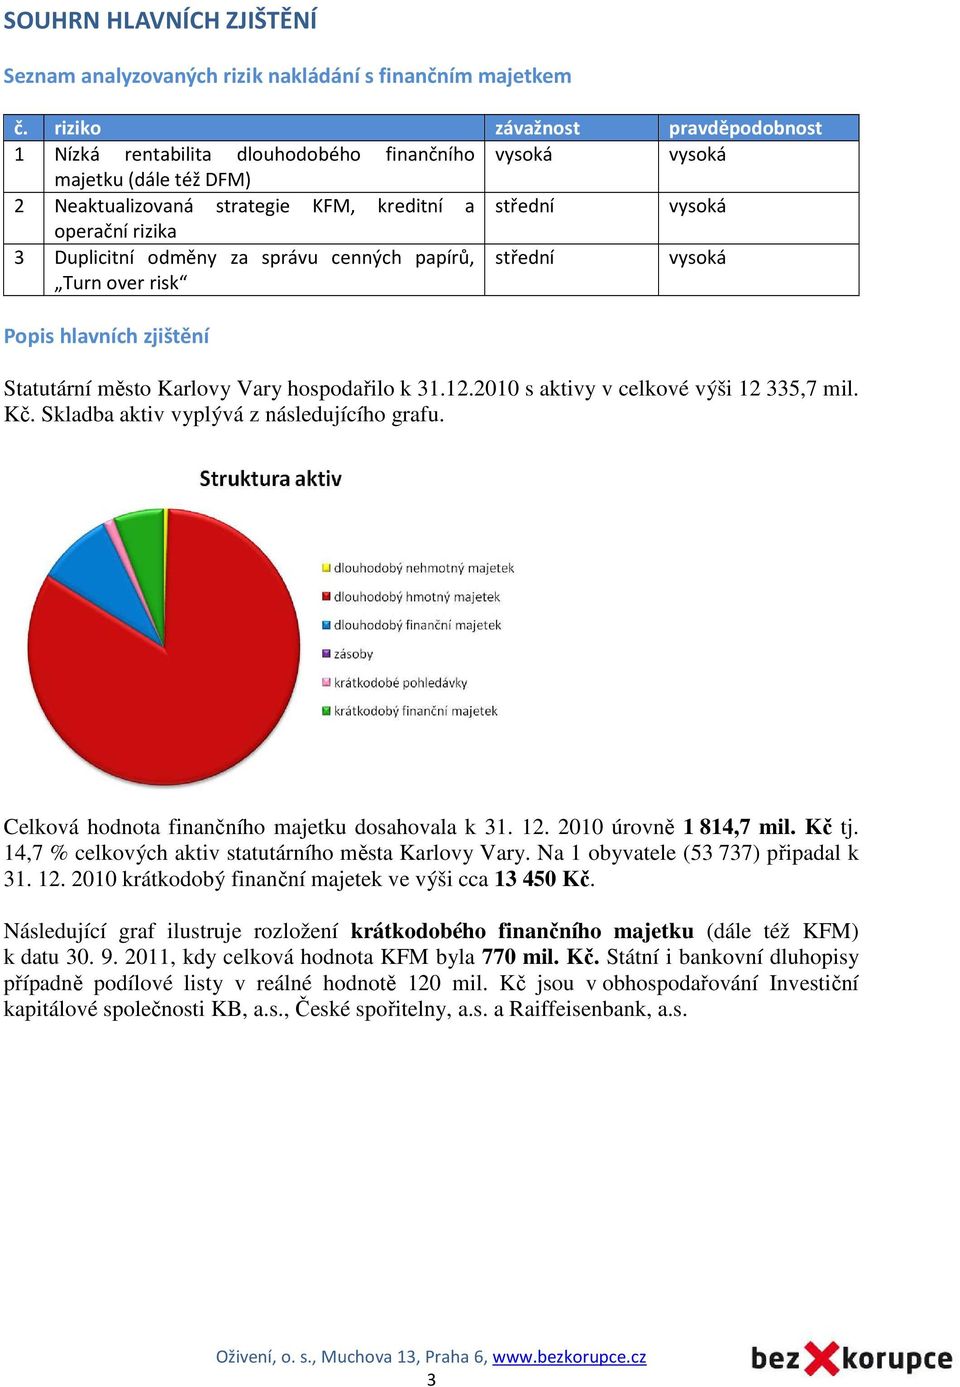 Duplicitní odměny za správu cenných papírů, Turn over risk střední vysoká Popis hlavních zjištění Statutární město Karlovy Vary hospodařilo k 31.12.2010 s aktivy v celkové výši 12 335,7 mil. Kč.